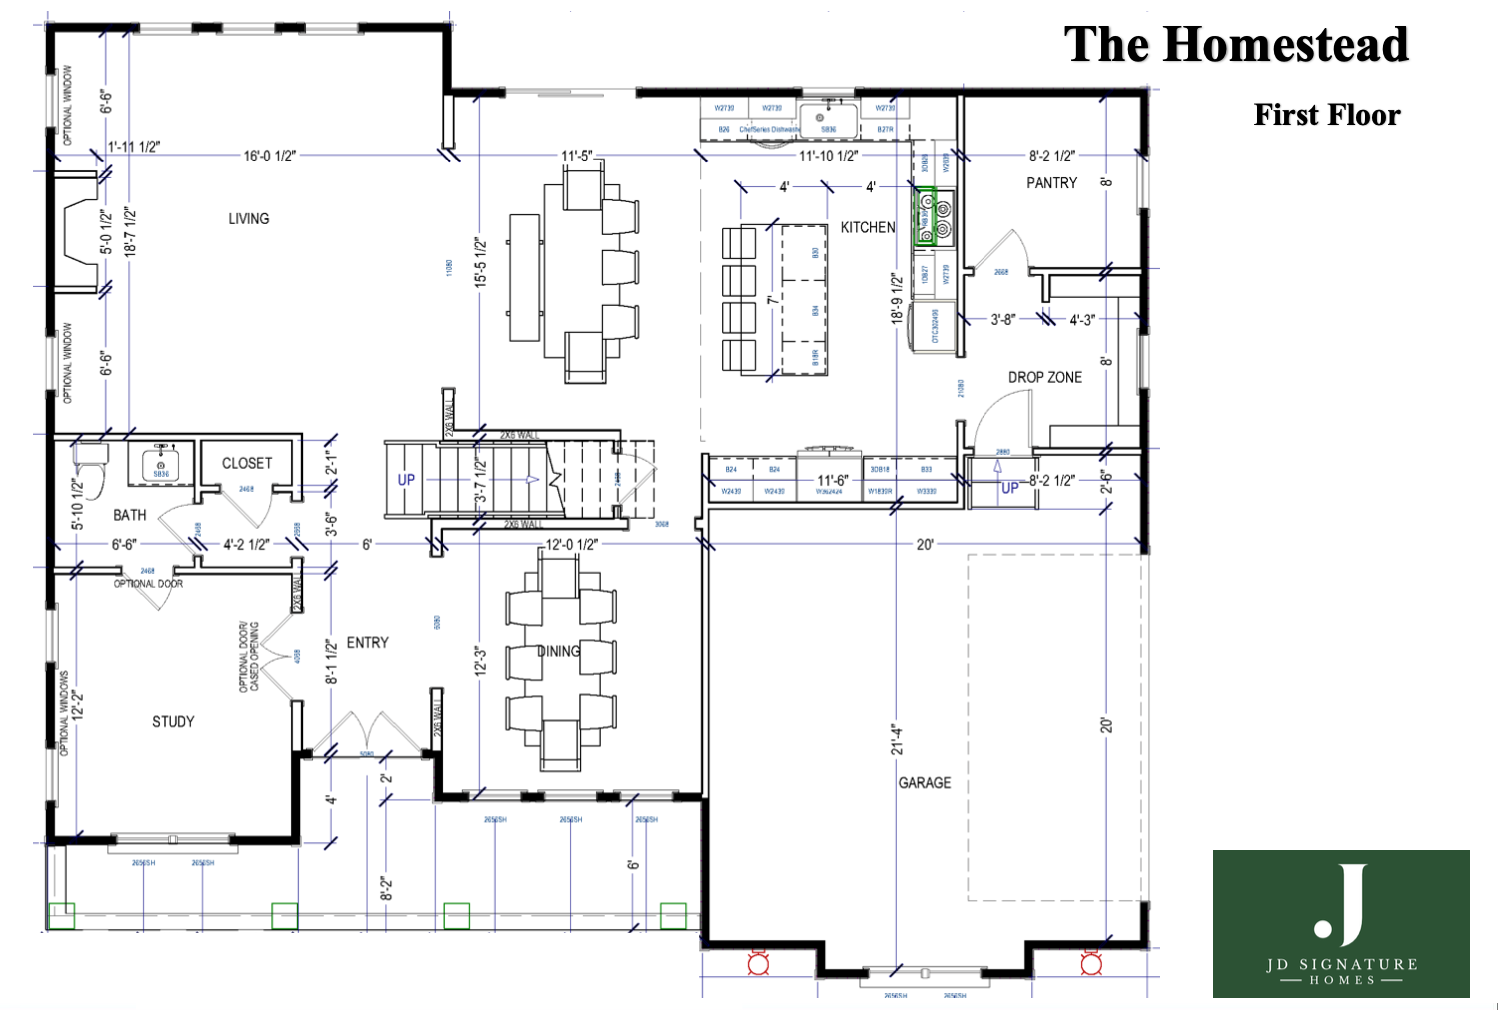 The Homestead-Farmhouse floor plan image